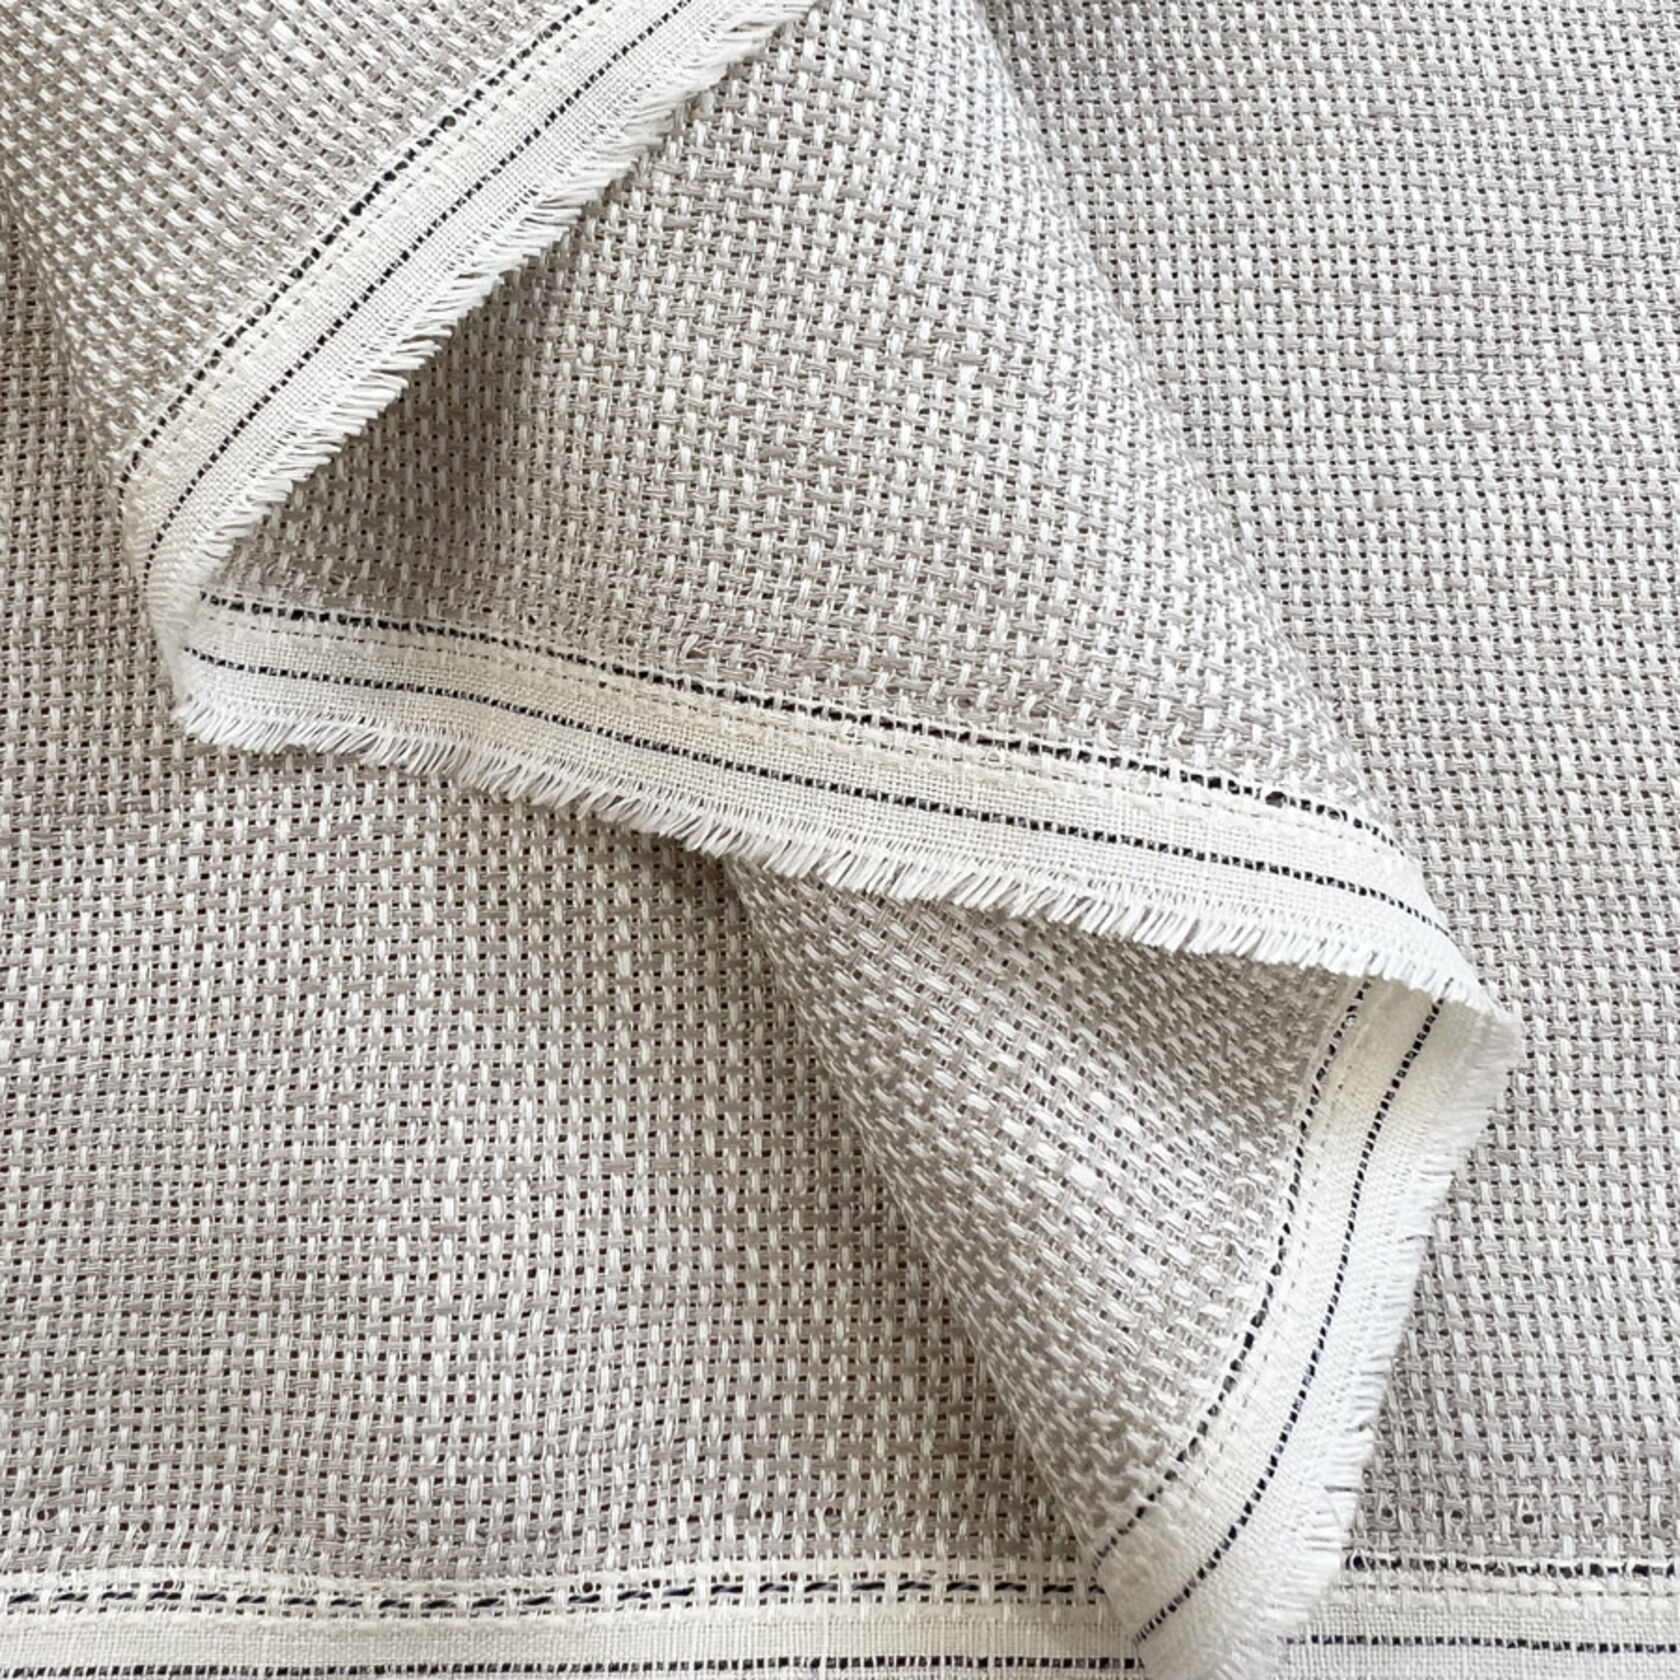 Open Weave 100% Linen Dress Fabric Let Loose - Light Beige